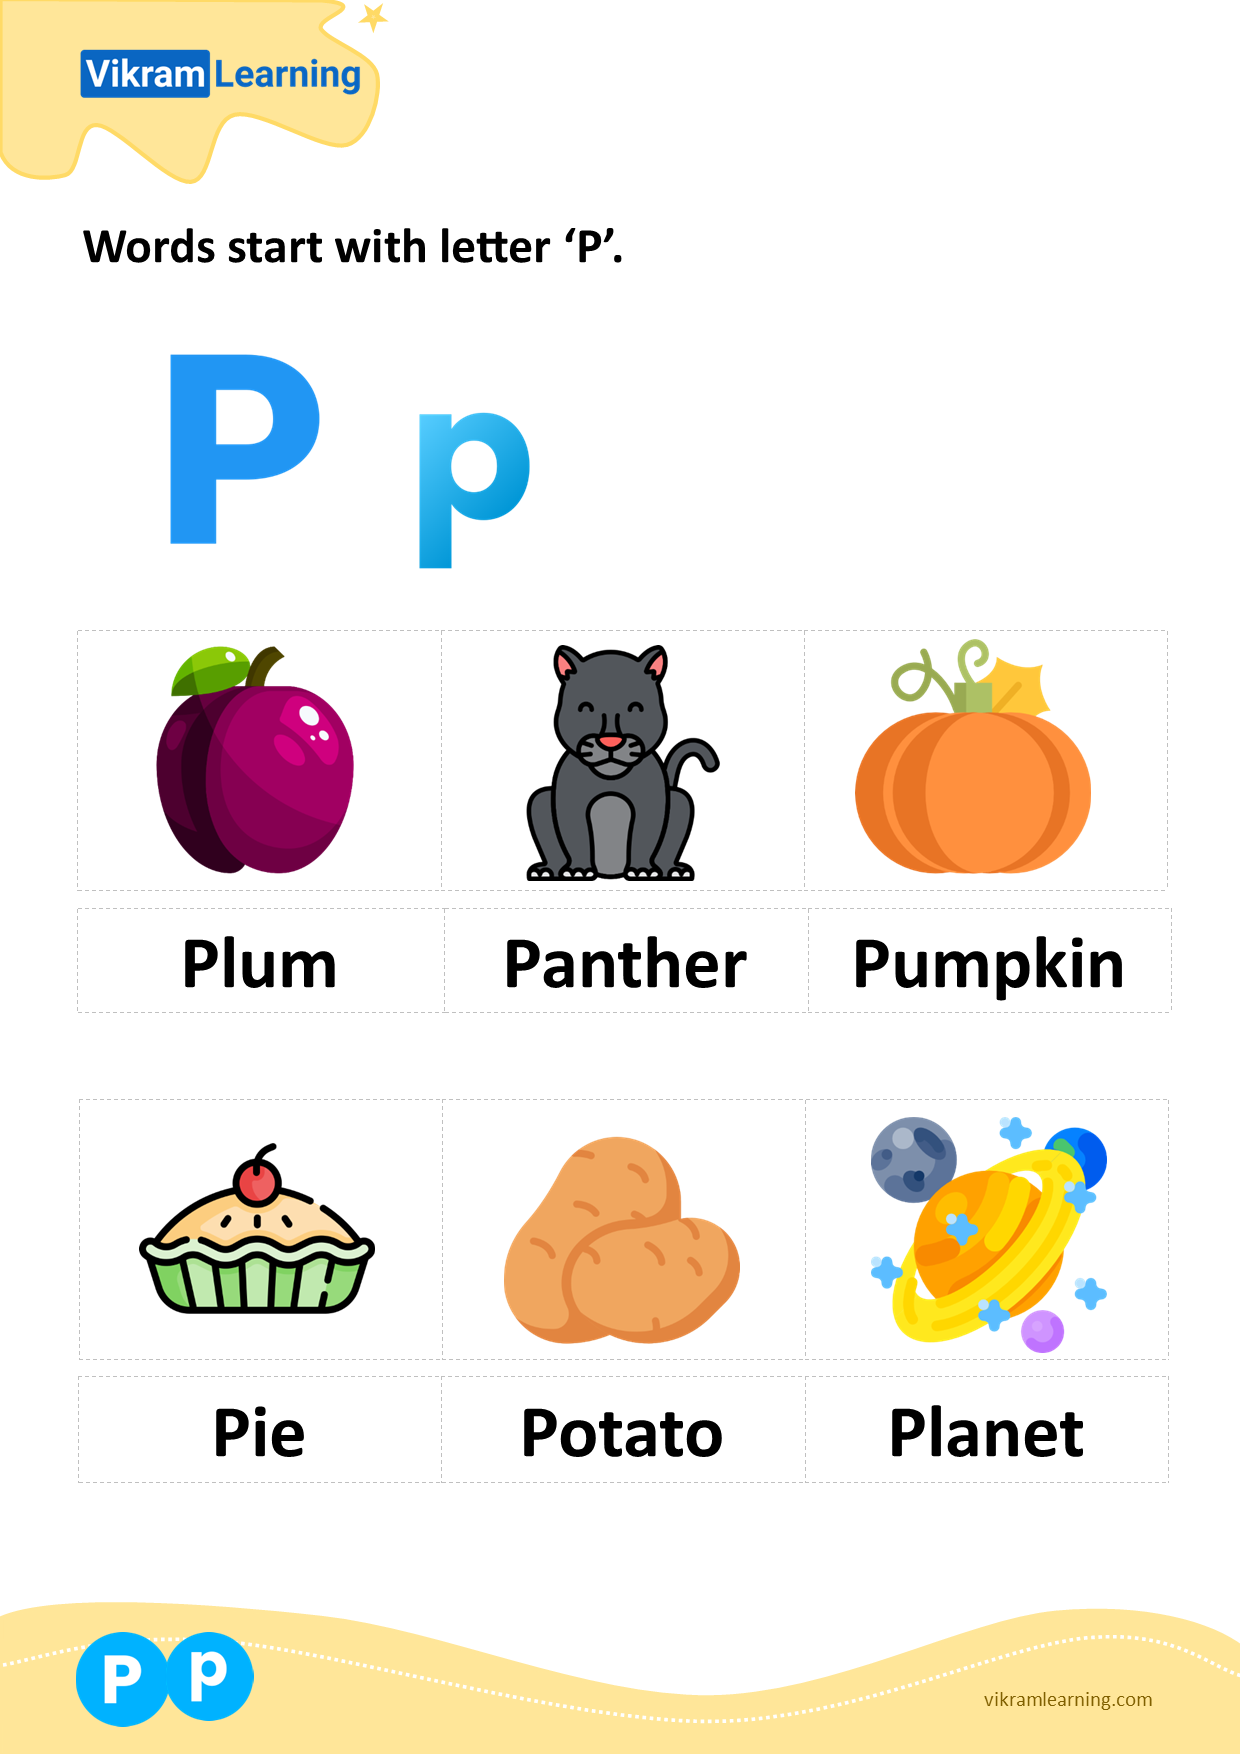 Download words start with letter 'p' worksheets | vikramlearning.com